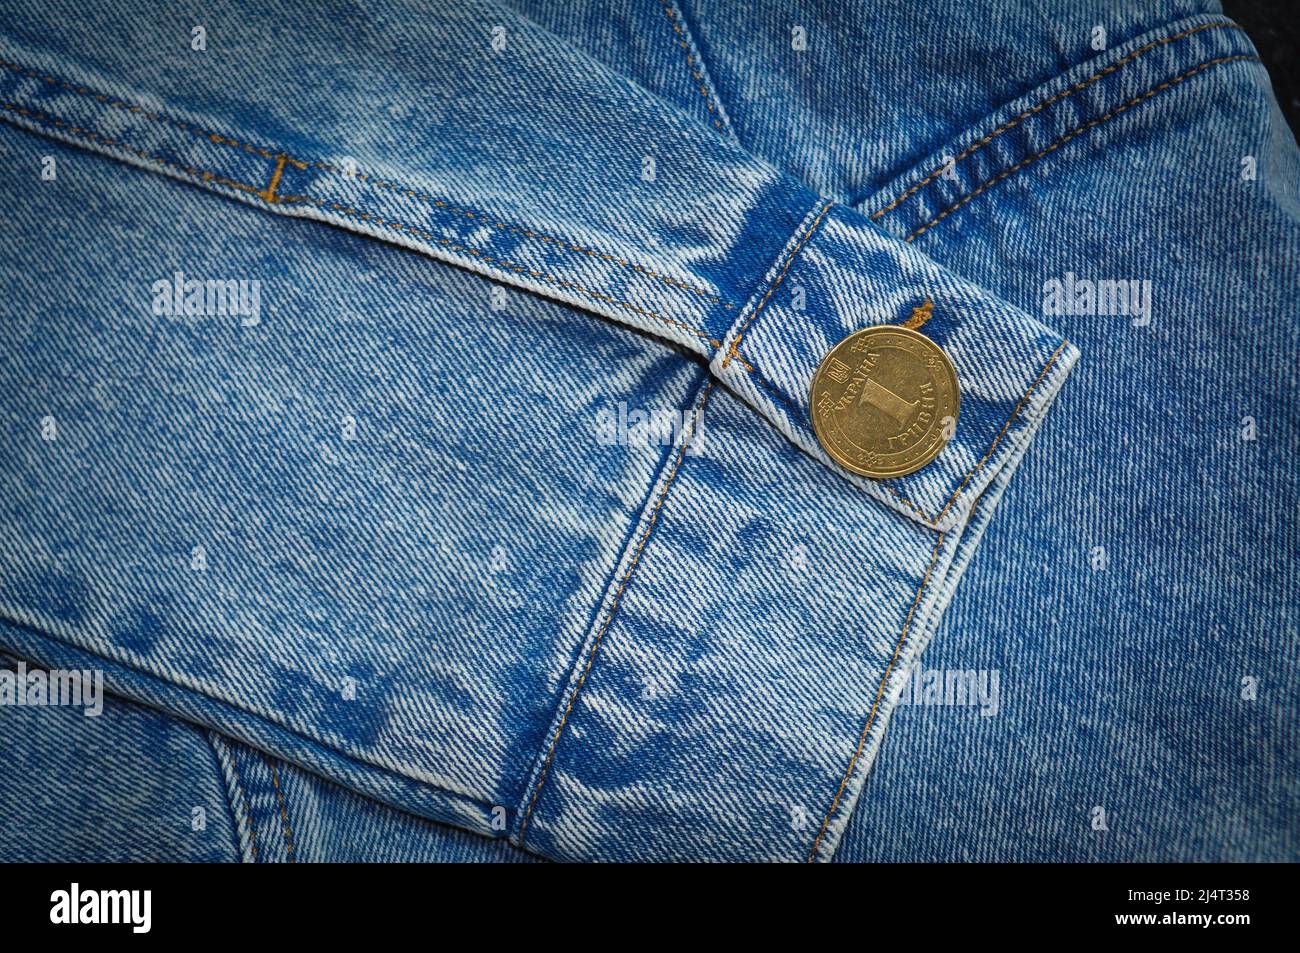 Teil der Jeansjacke mit goldenen Münz-Manschettenknöpfen und Knöpfen Stockfoto